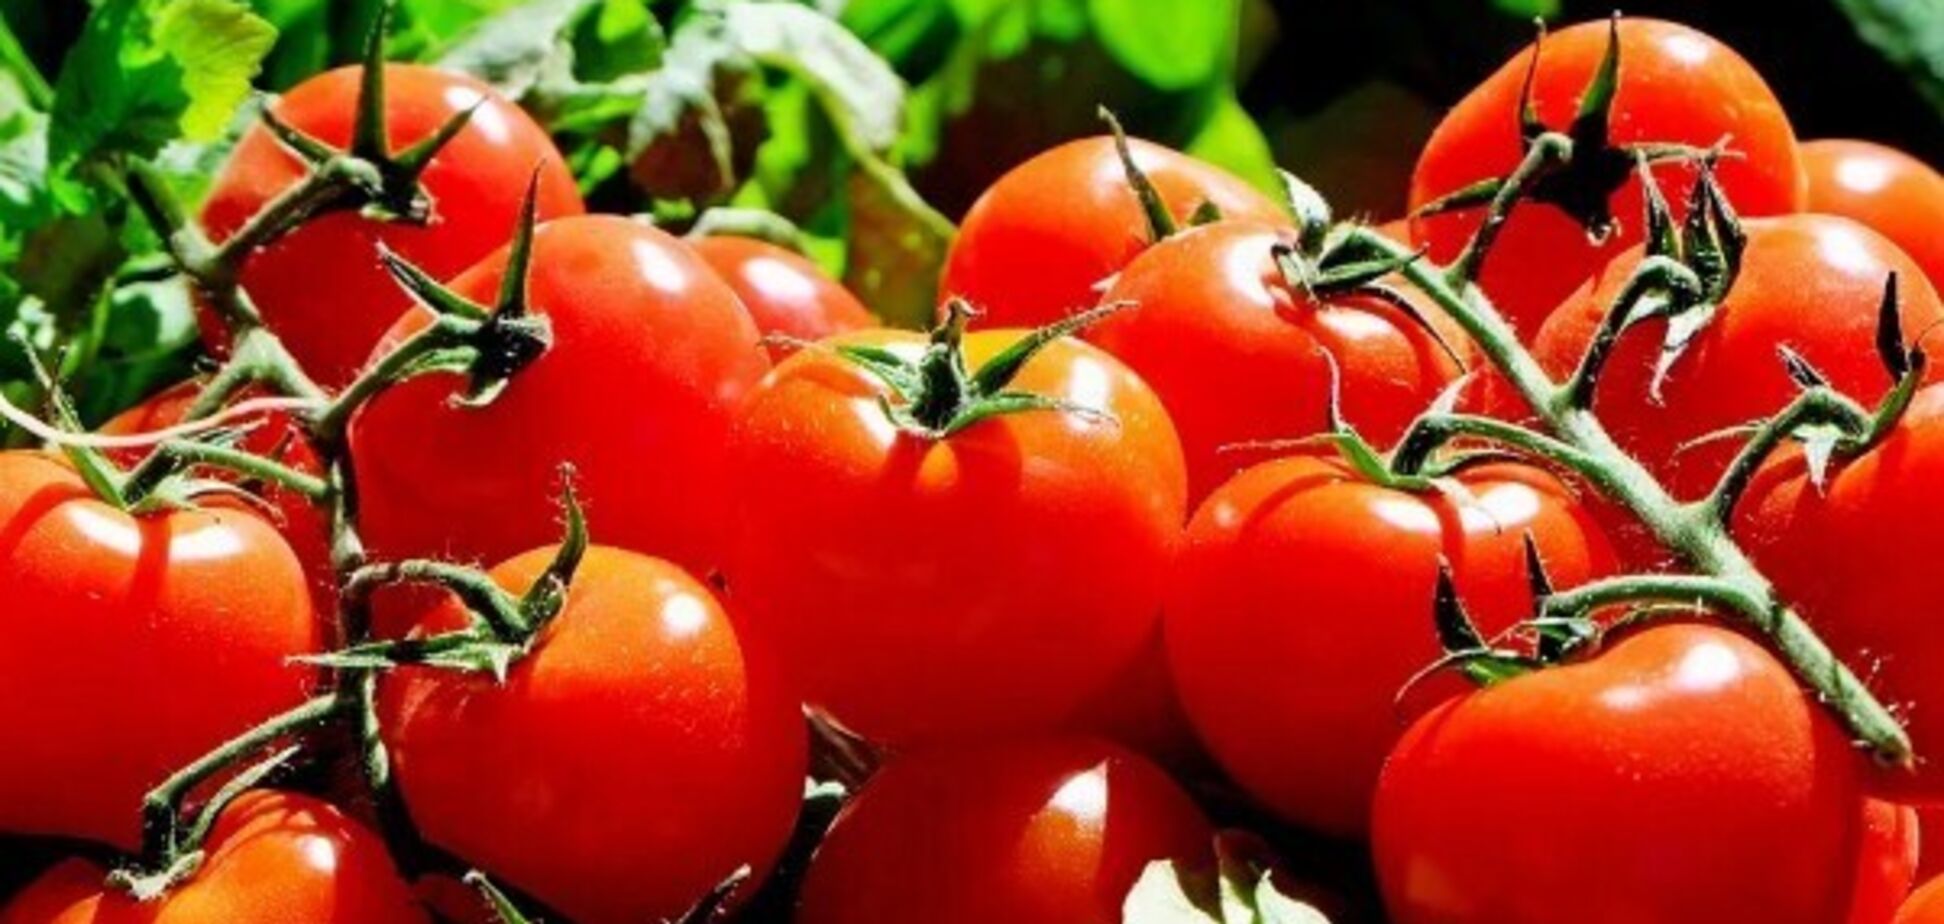 Як швидко замаринувати помідори: їсти можна через декілька годин